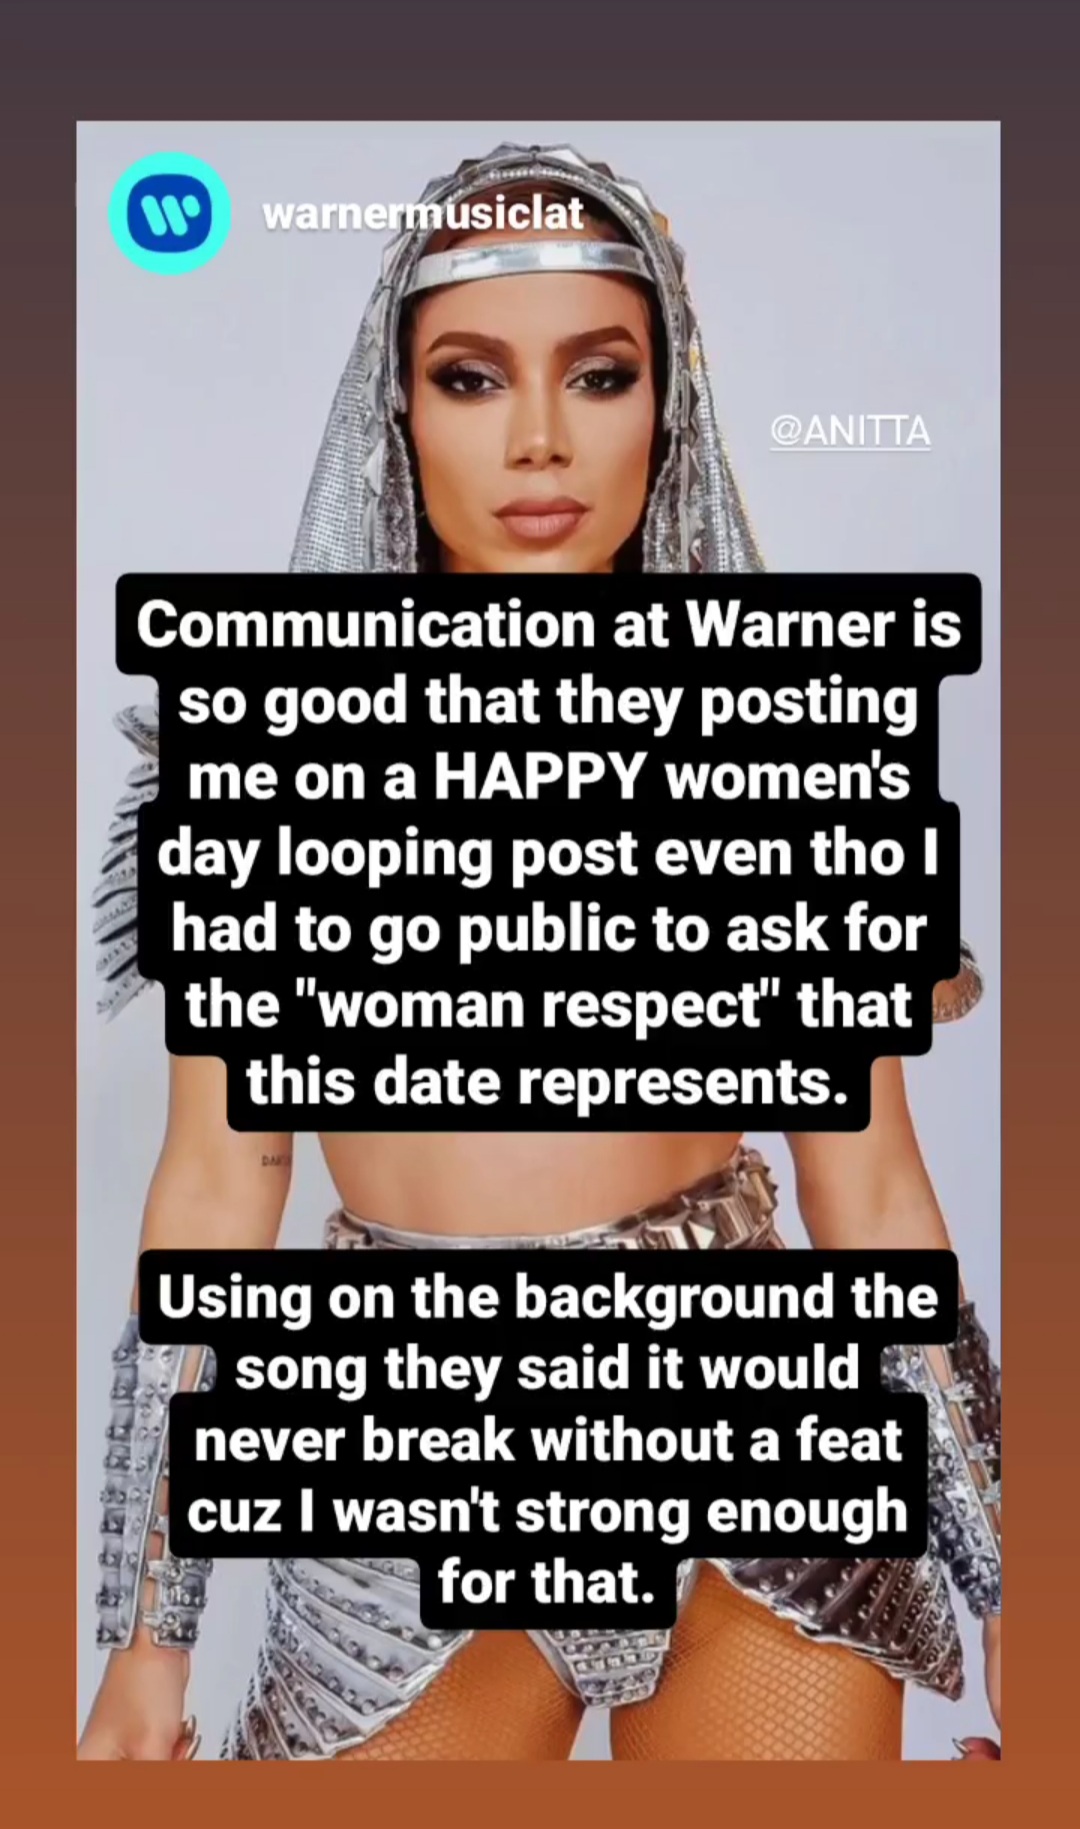 Warner Music celebra Dia Internacional das Mulheres com imagem de Anitta. (Foto: Reprodução/ Instagram) Lorena Bueri